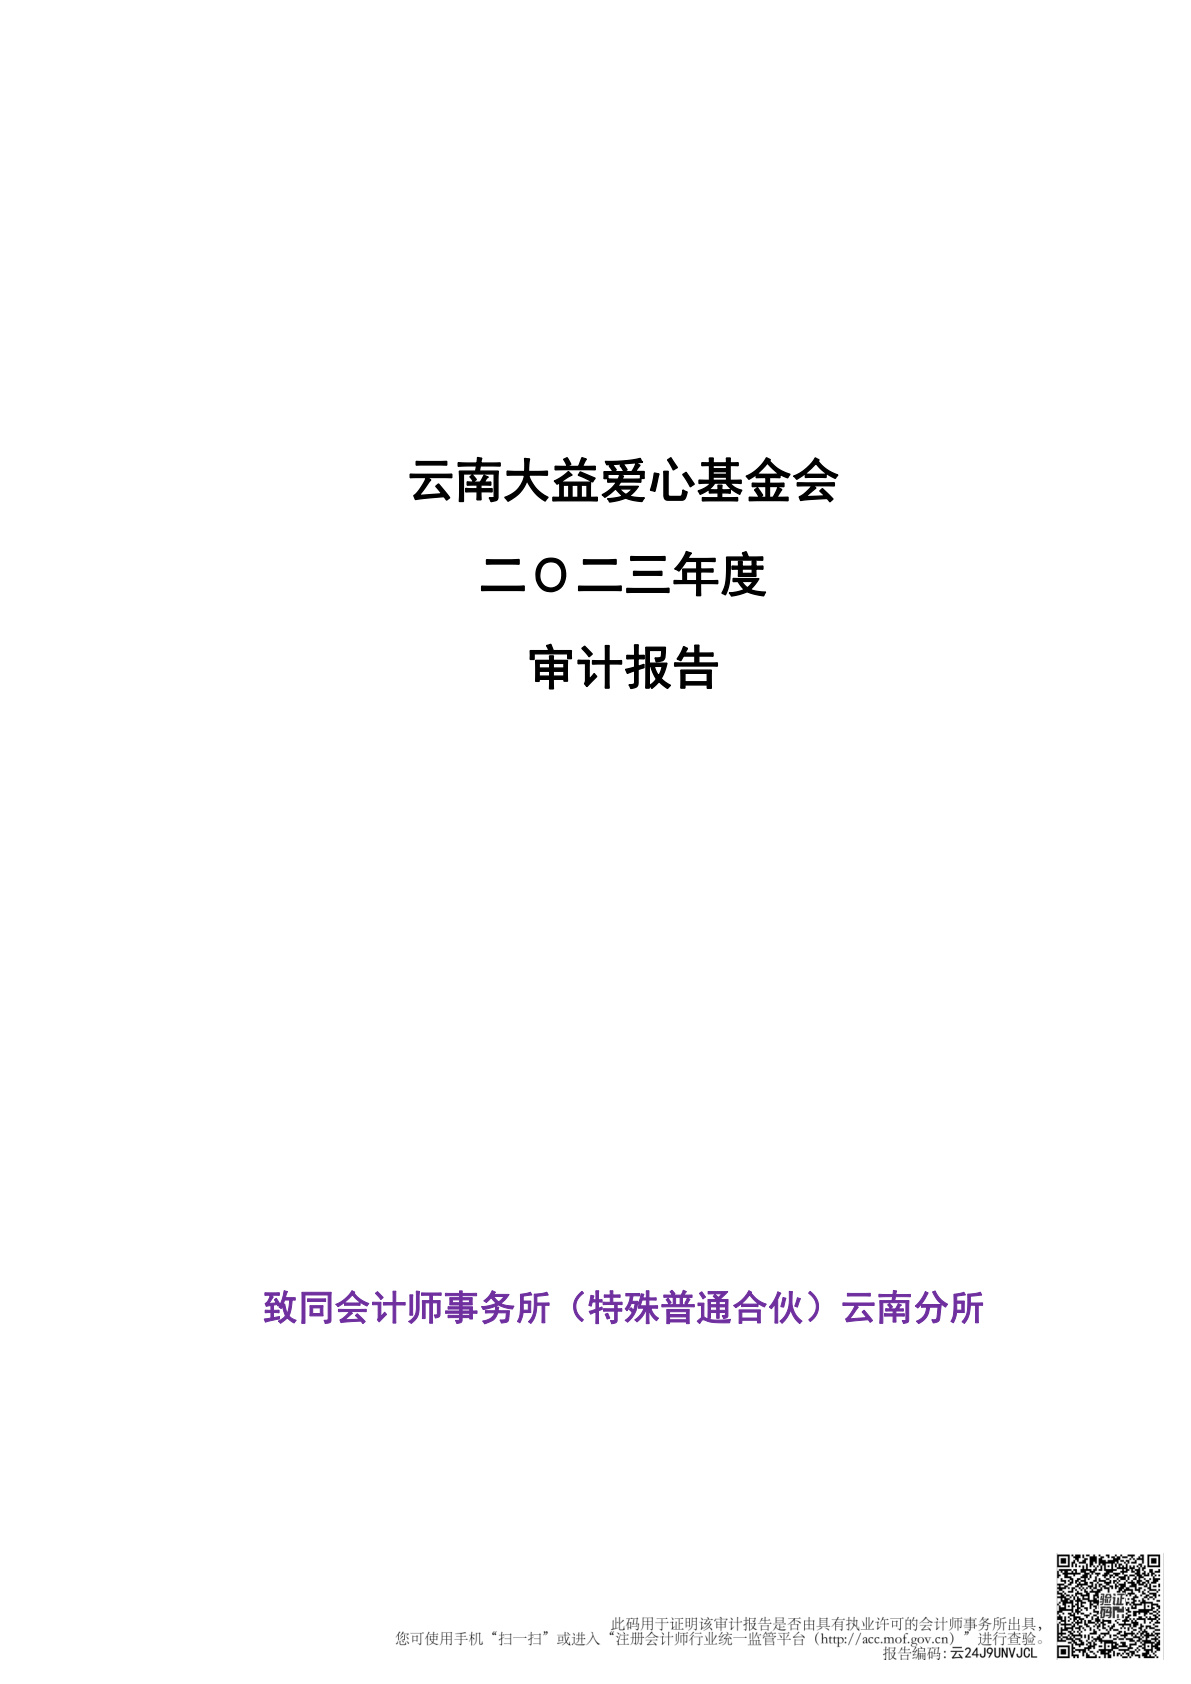 云南118图库彩图免费大全爱心基金会二Ｏ二三年度审计报告公示 (2024-03-30)